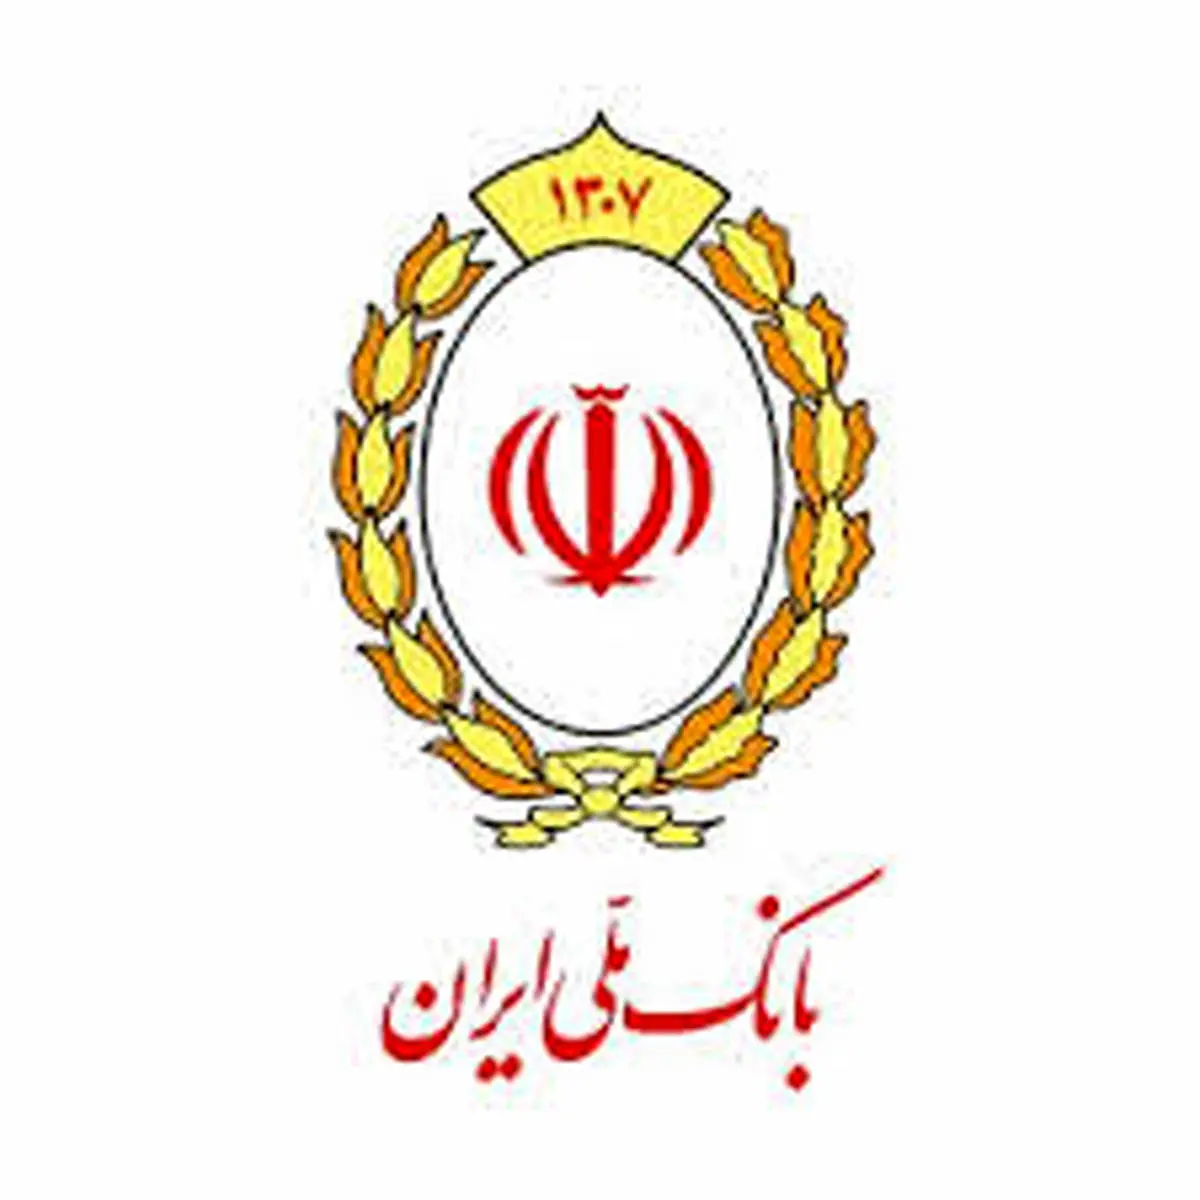 کانال بانک ملی ایران در بله ۹۰ هزار تایی شد

